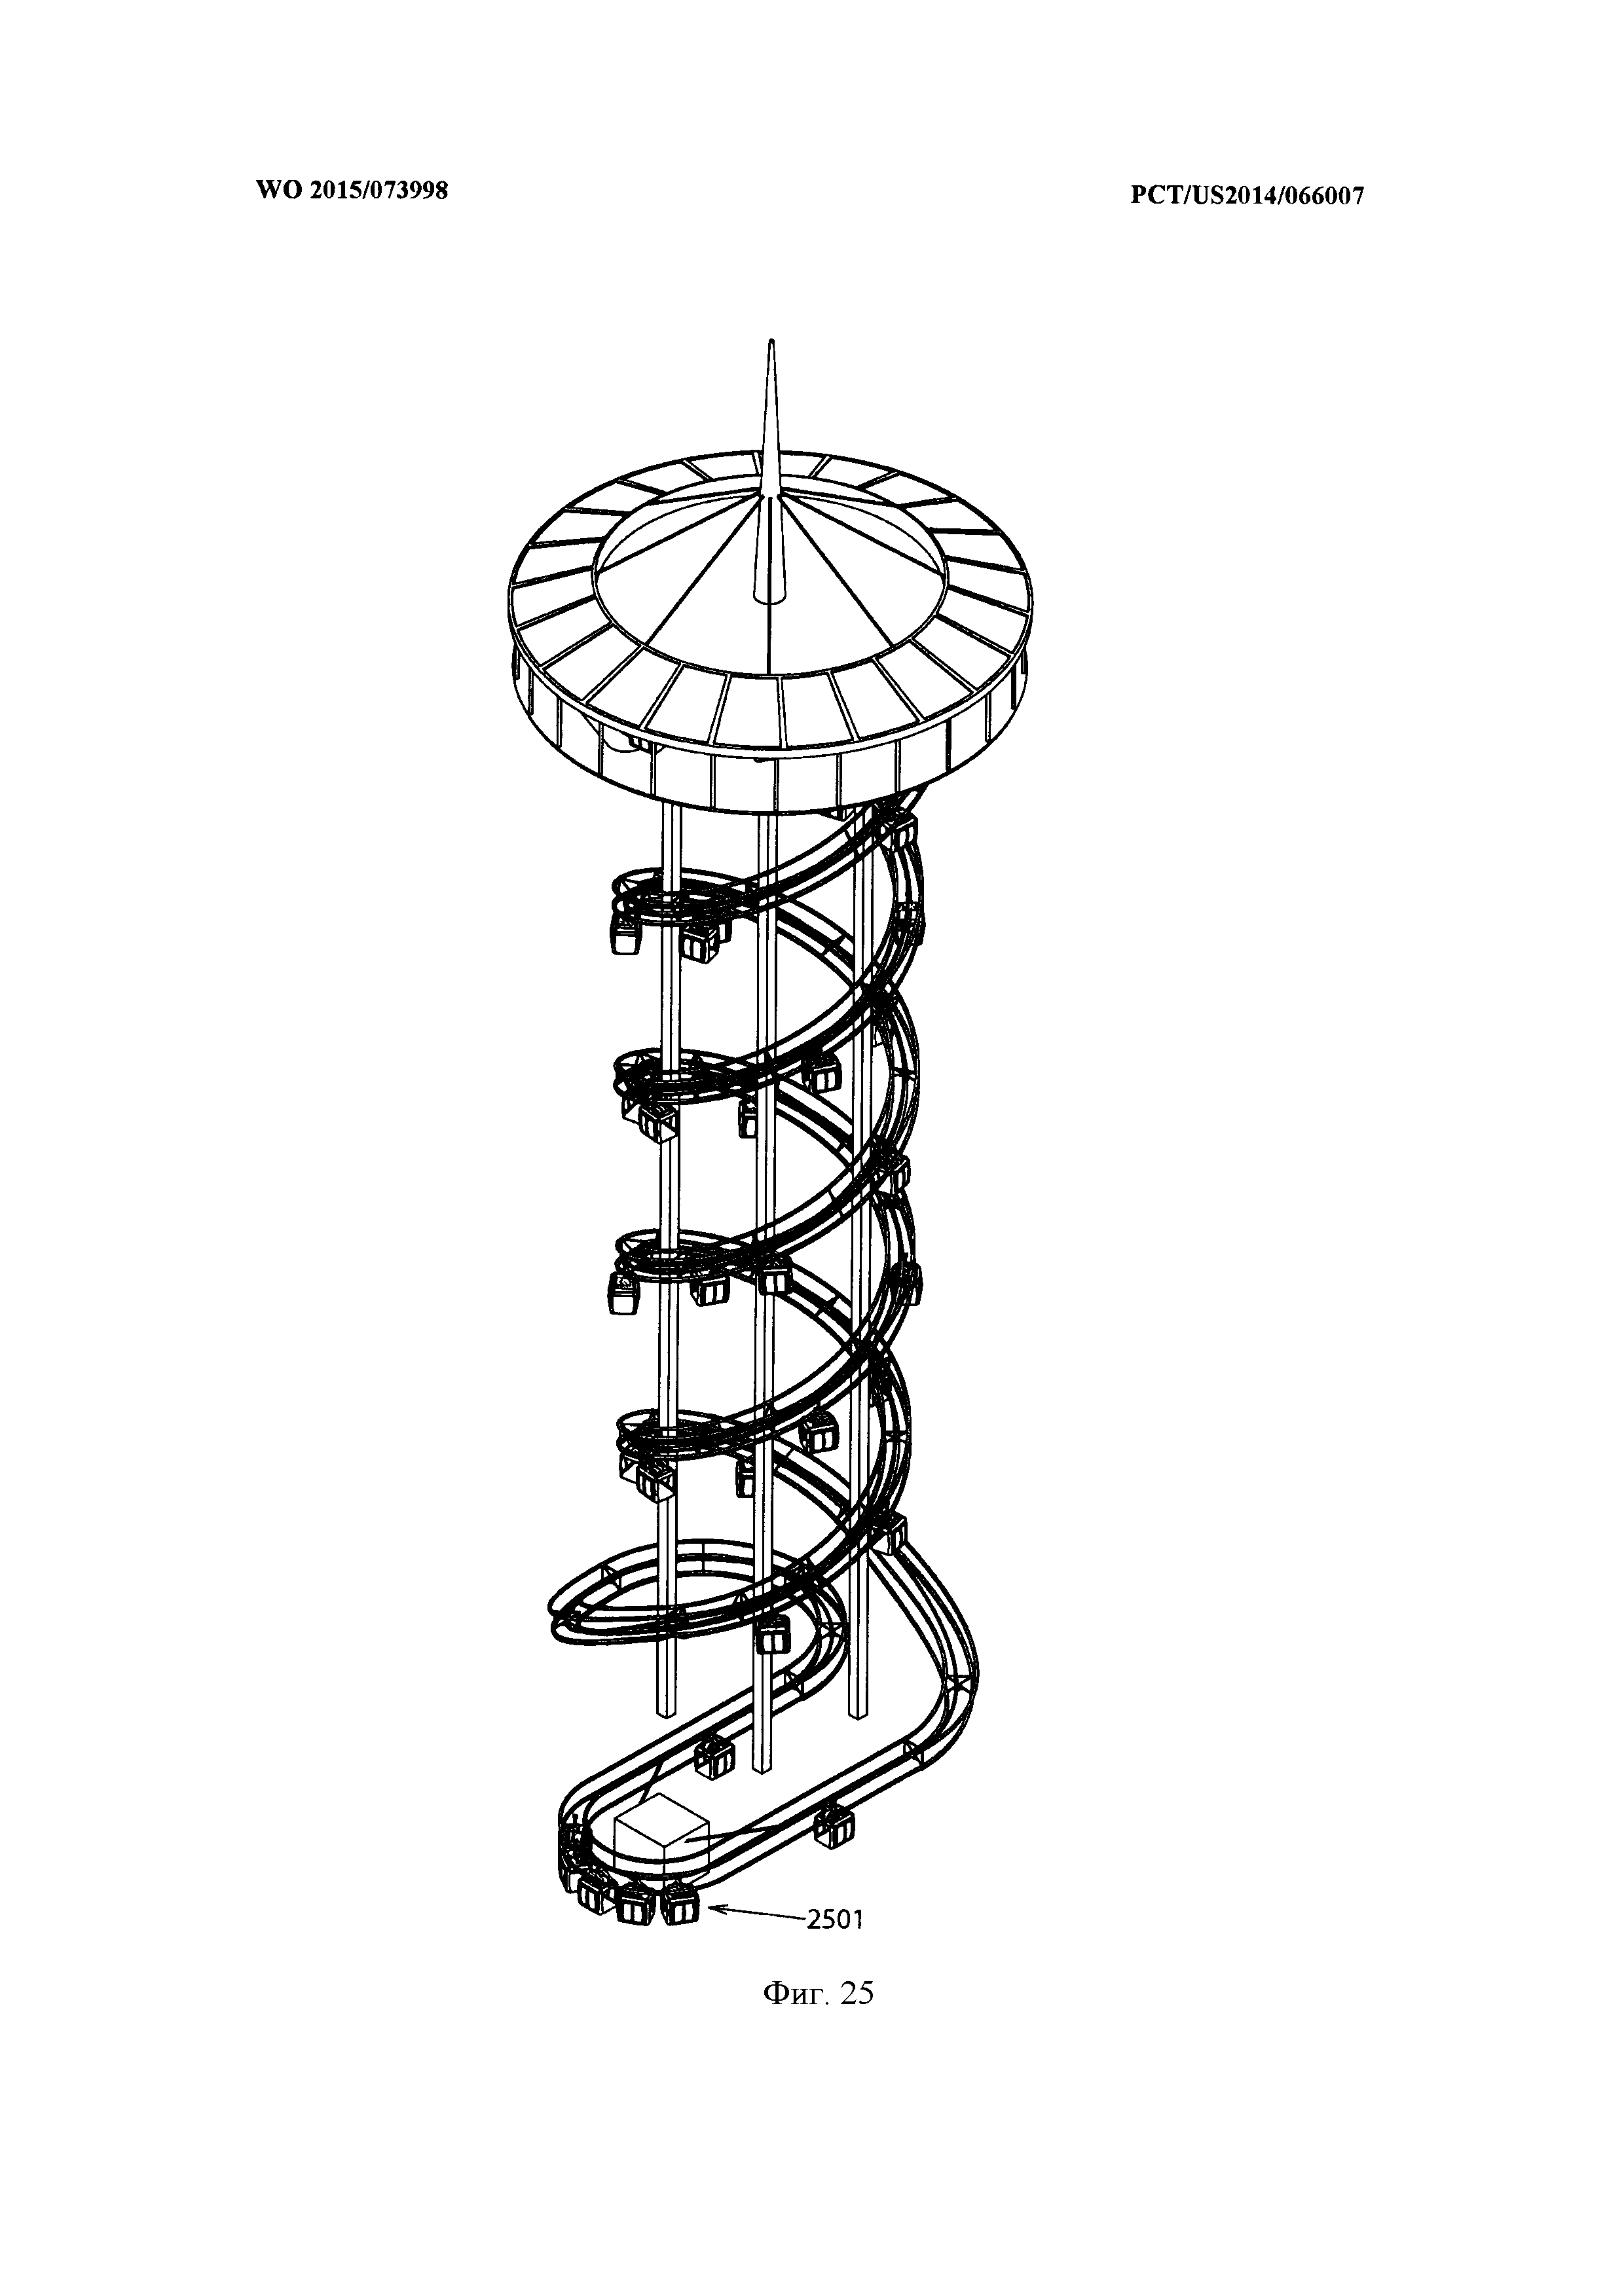 Рельсовые пути и привод аттракциона, установленного на башне